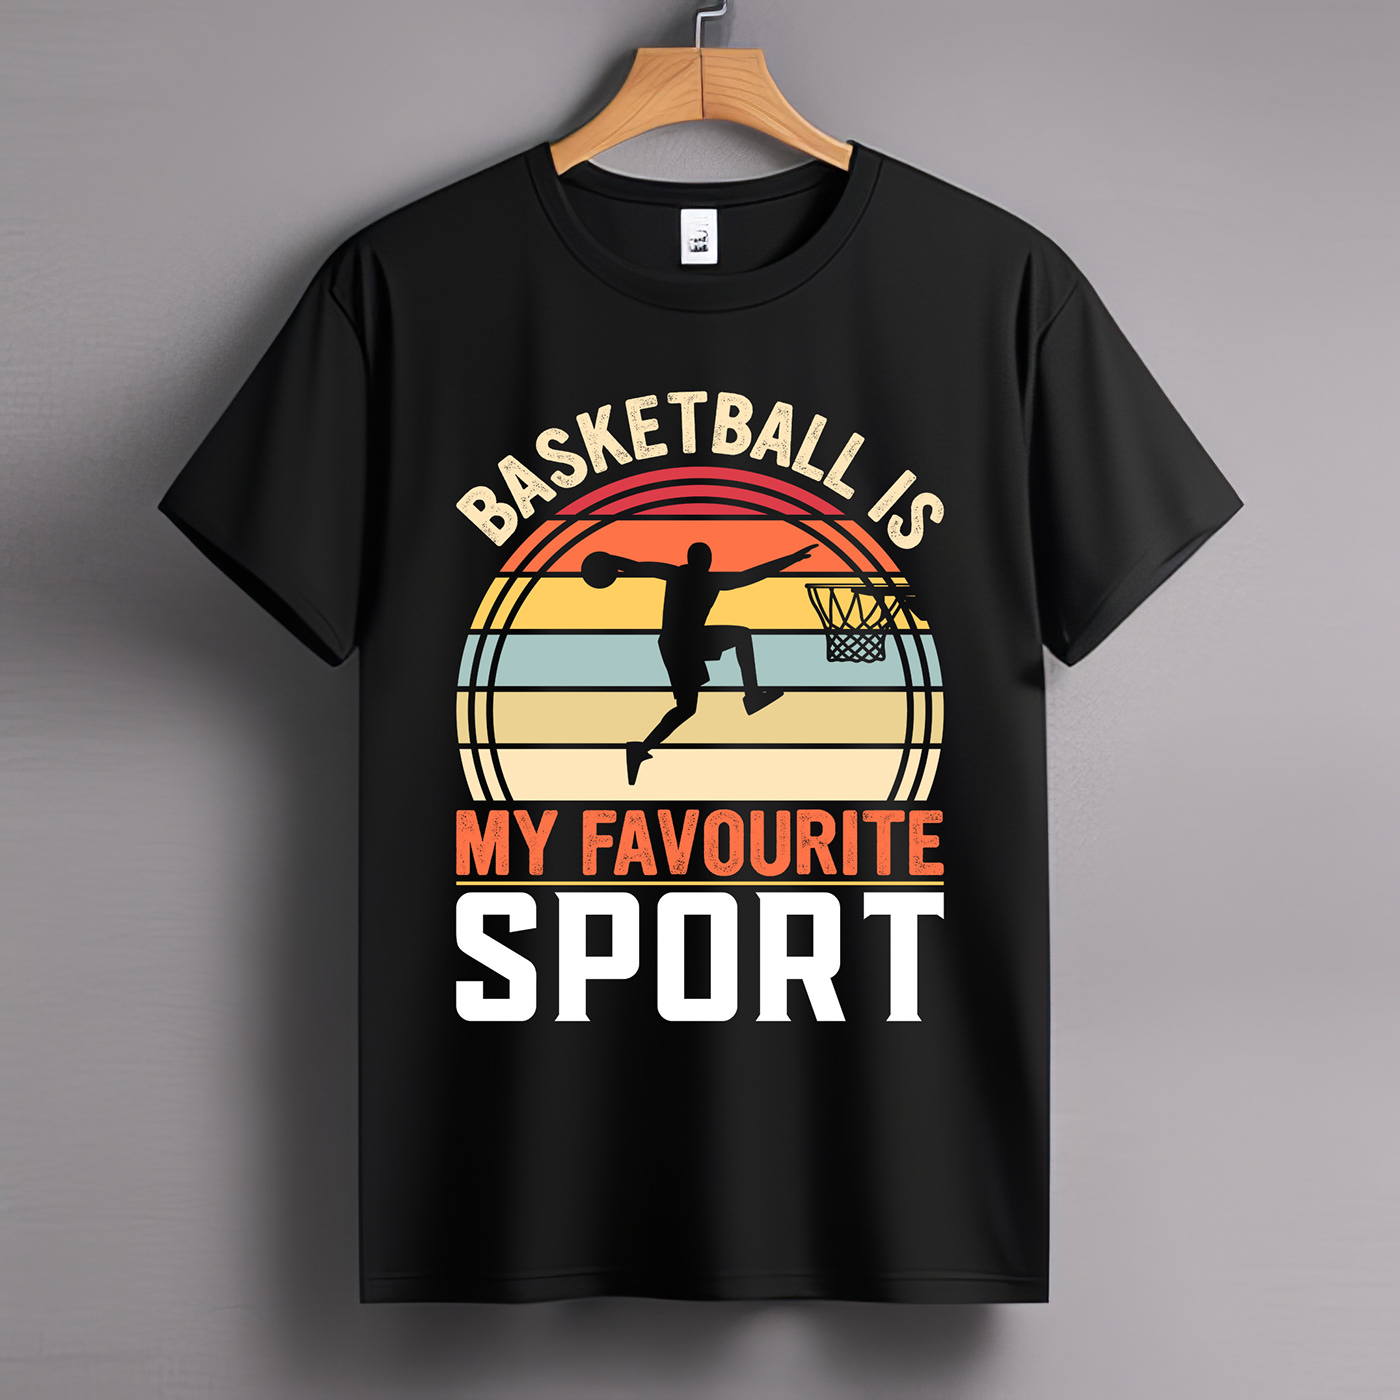 Basketball t-shirt design Tshirt Design tshirts T-Shirt Design sports t-shirt design custom t-shirt design Typography T-shirt t-shirts basketball t-shirt Retro vintage t-shirt